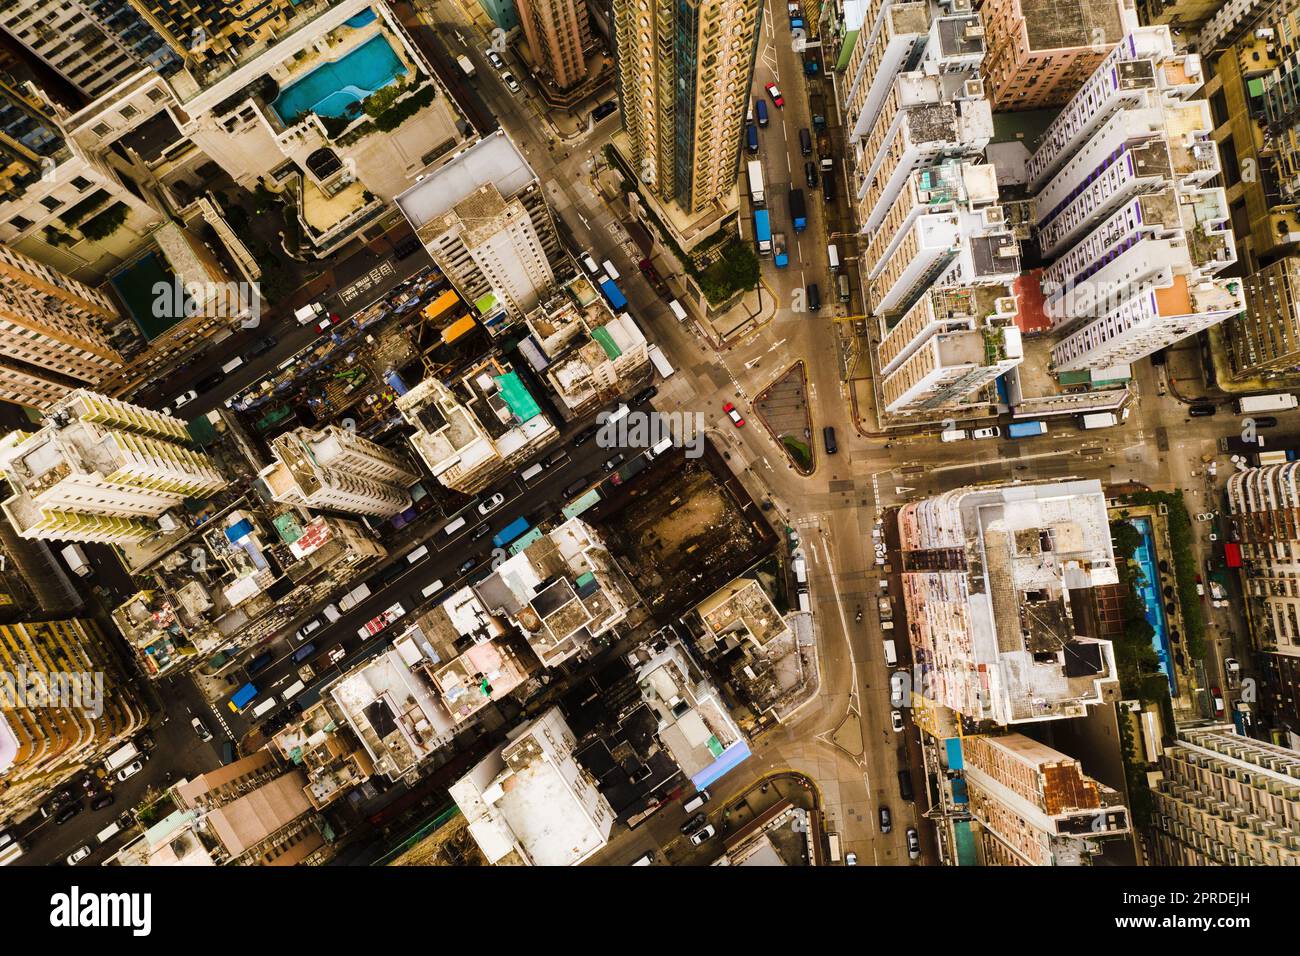 Kommen Sie und erkunden Sie die Größe. Wolkenkratzer, Bürogebäude und andere Geschäftsgebäude in der urbanen Metropole Hongkong. Stockfoto